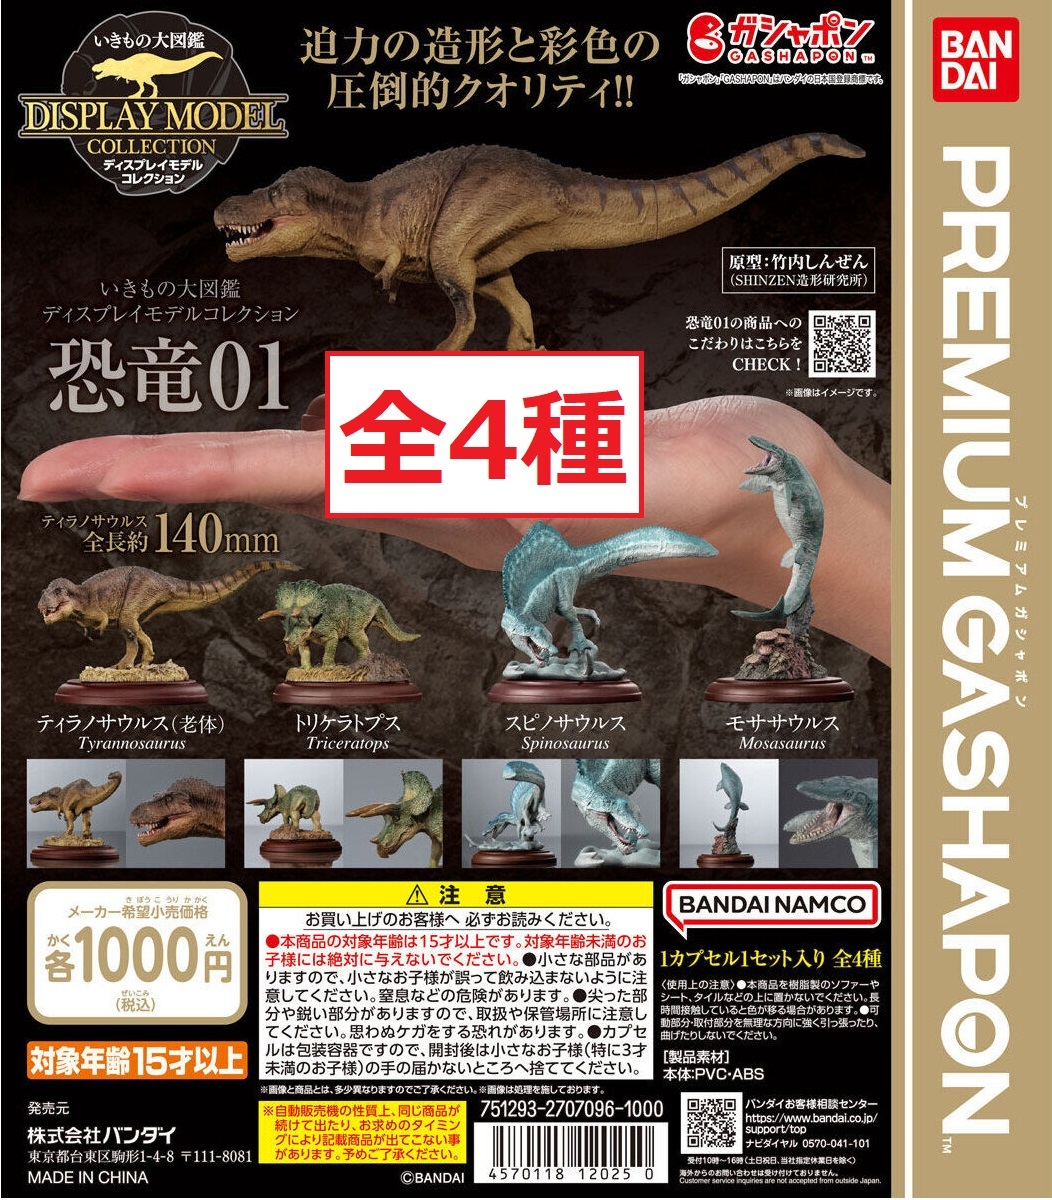 ☆いきもの大図鑑 ディスプレイモデルコレクション 恐竜01 全4種 スピノサウルス トリケラトプス ティラノサウルス モササウルス